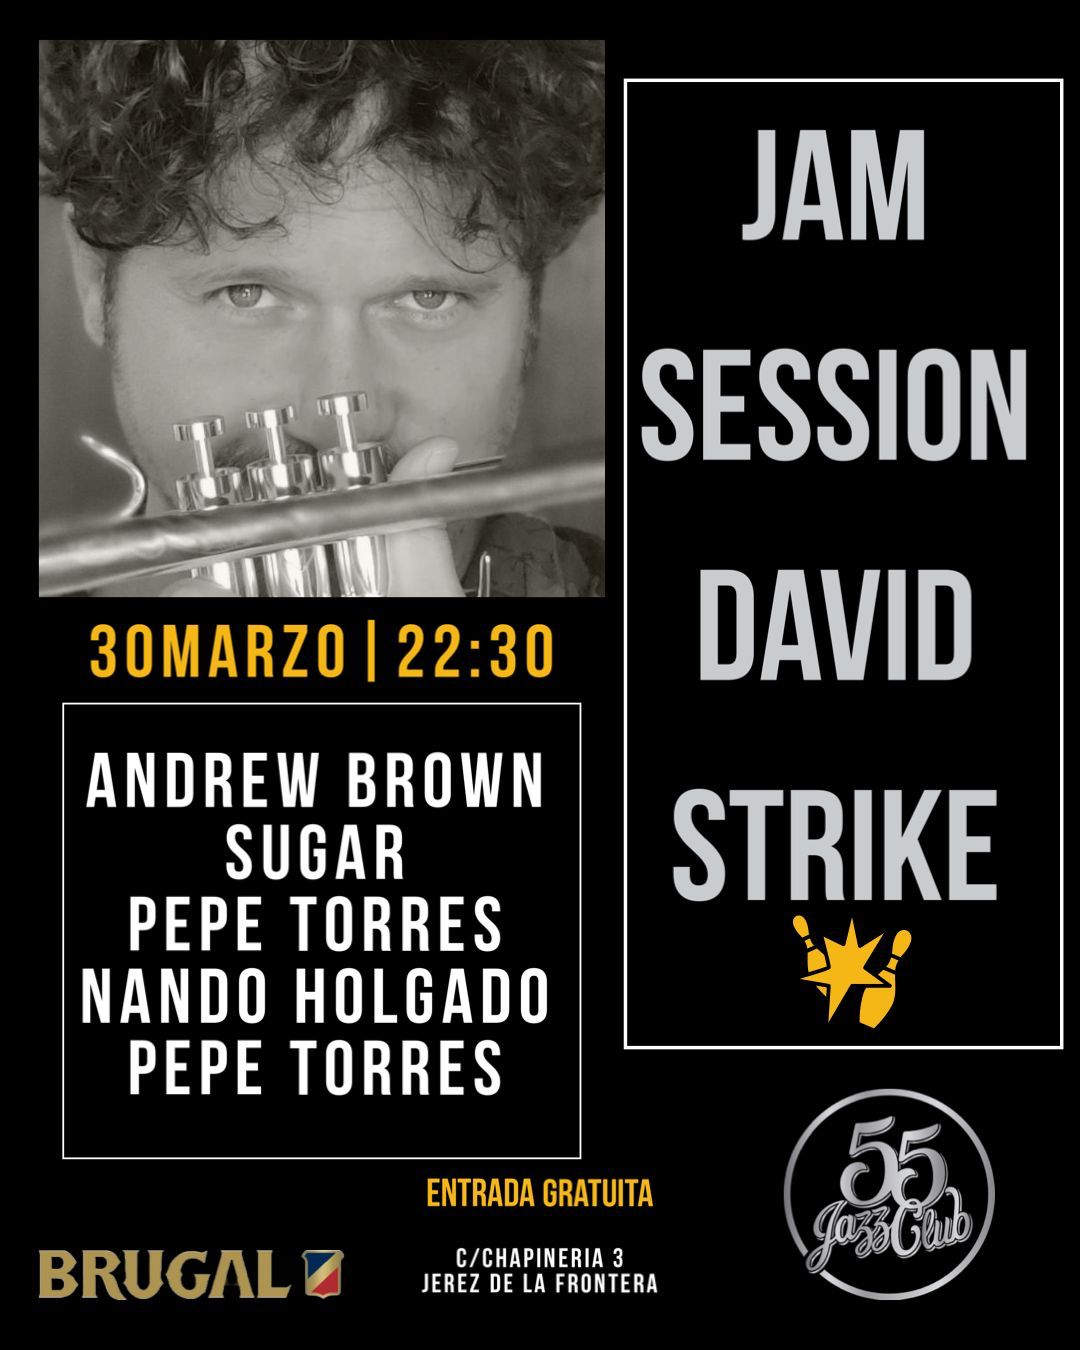 Jam Session 55 Jazz Club